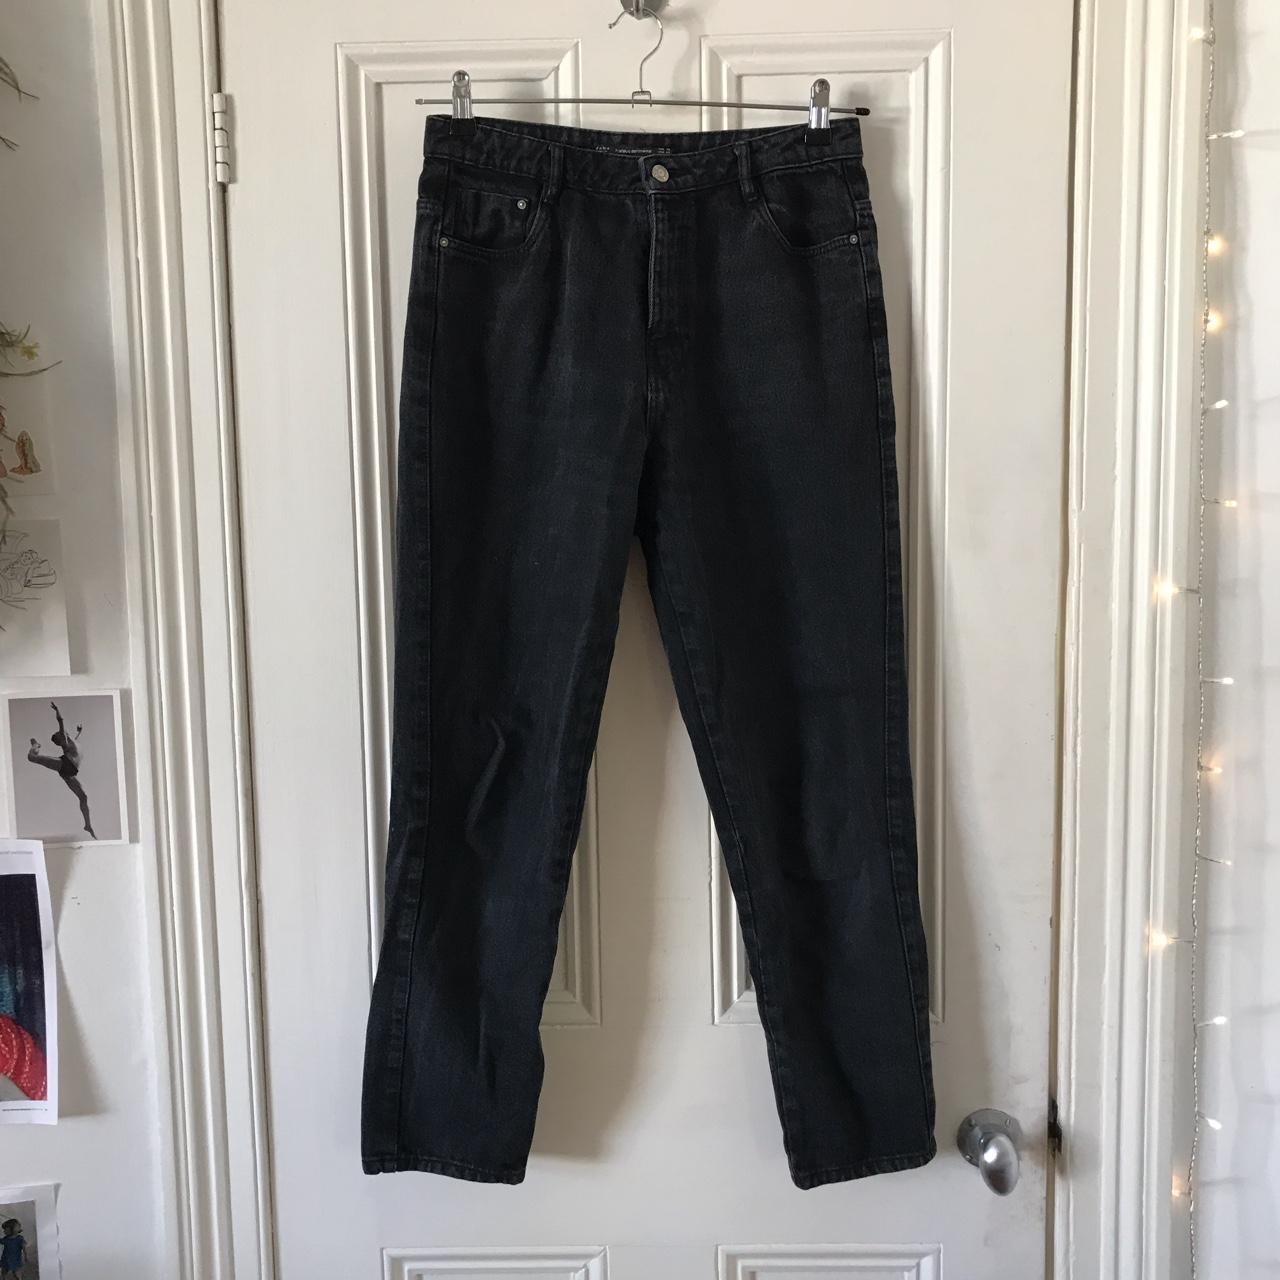 Black Zara boyfriend cut jeans Waist 28 Barely... - Depop